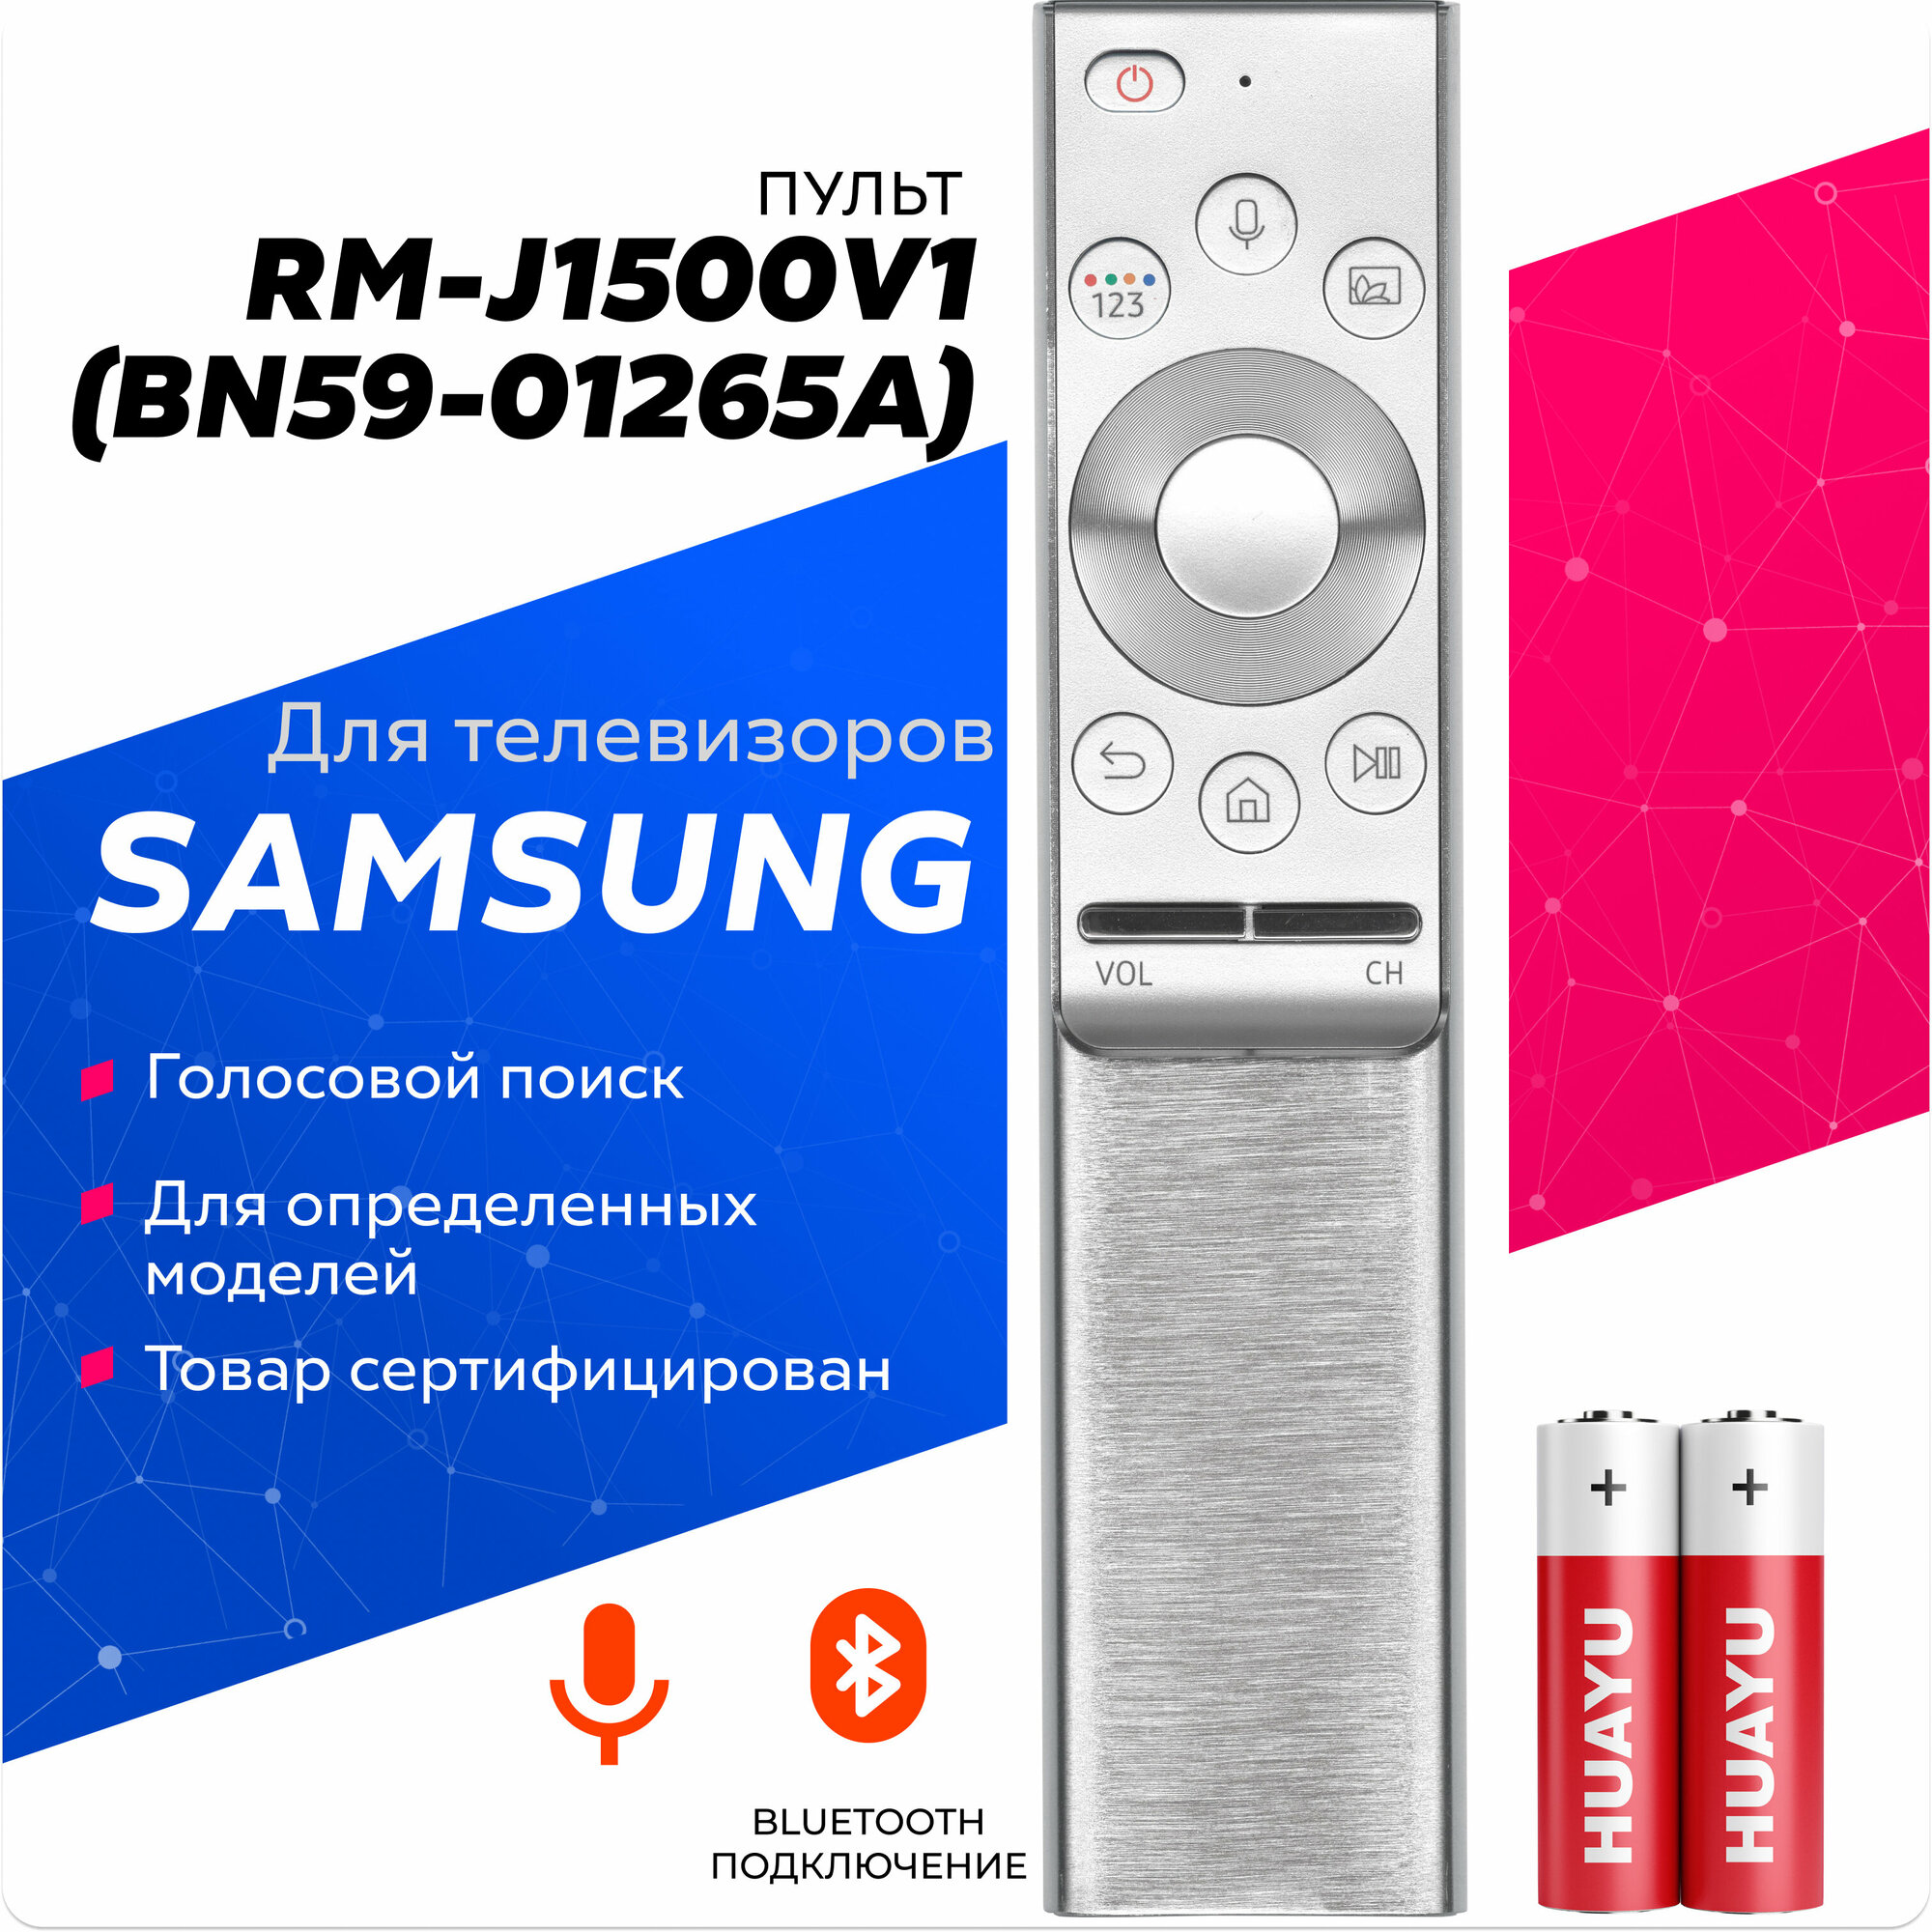 Голосовой пульт Huayu RM-J1500V1 (BN59-01265A) для телевизоров SAMSUNG